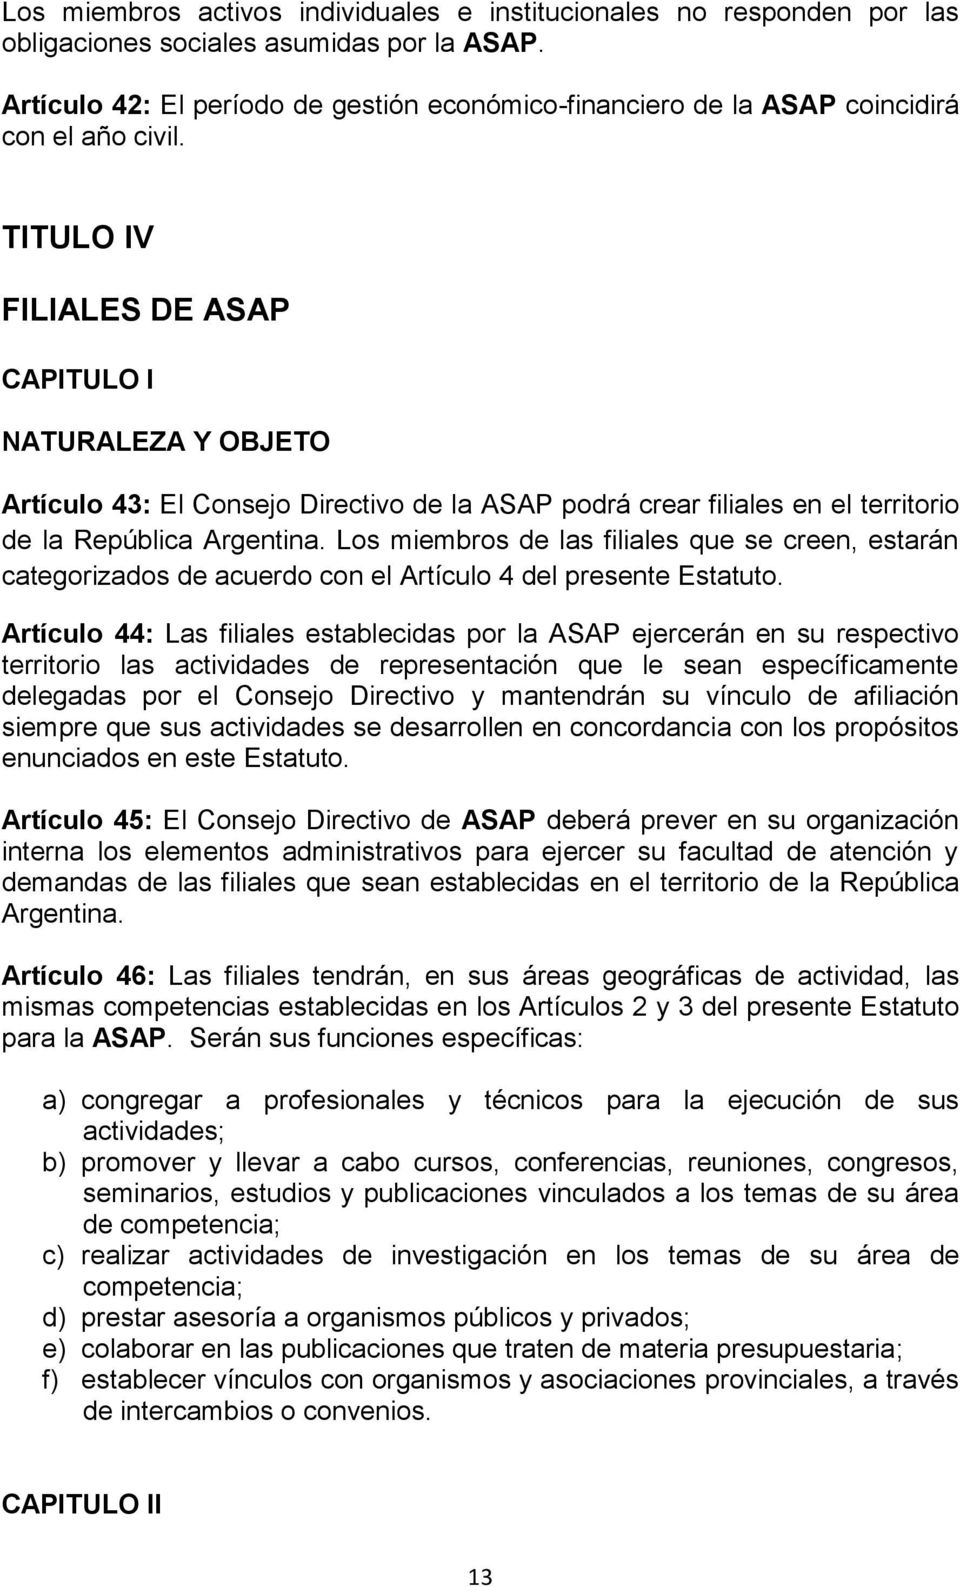 TITULO IV FILIALES DE ASAP CAPITULO I NATURALEZA Y OBJETO Artículo 43: El Consejo Directivo de la ASAP podrá crear filiales en el territorio de la República Argentina.